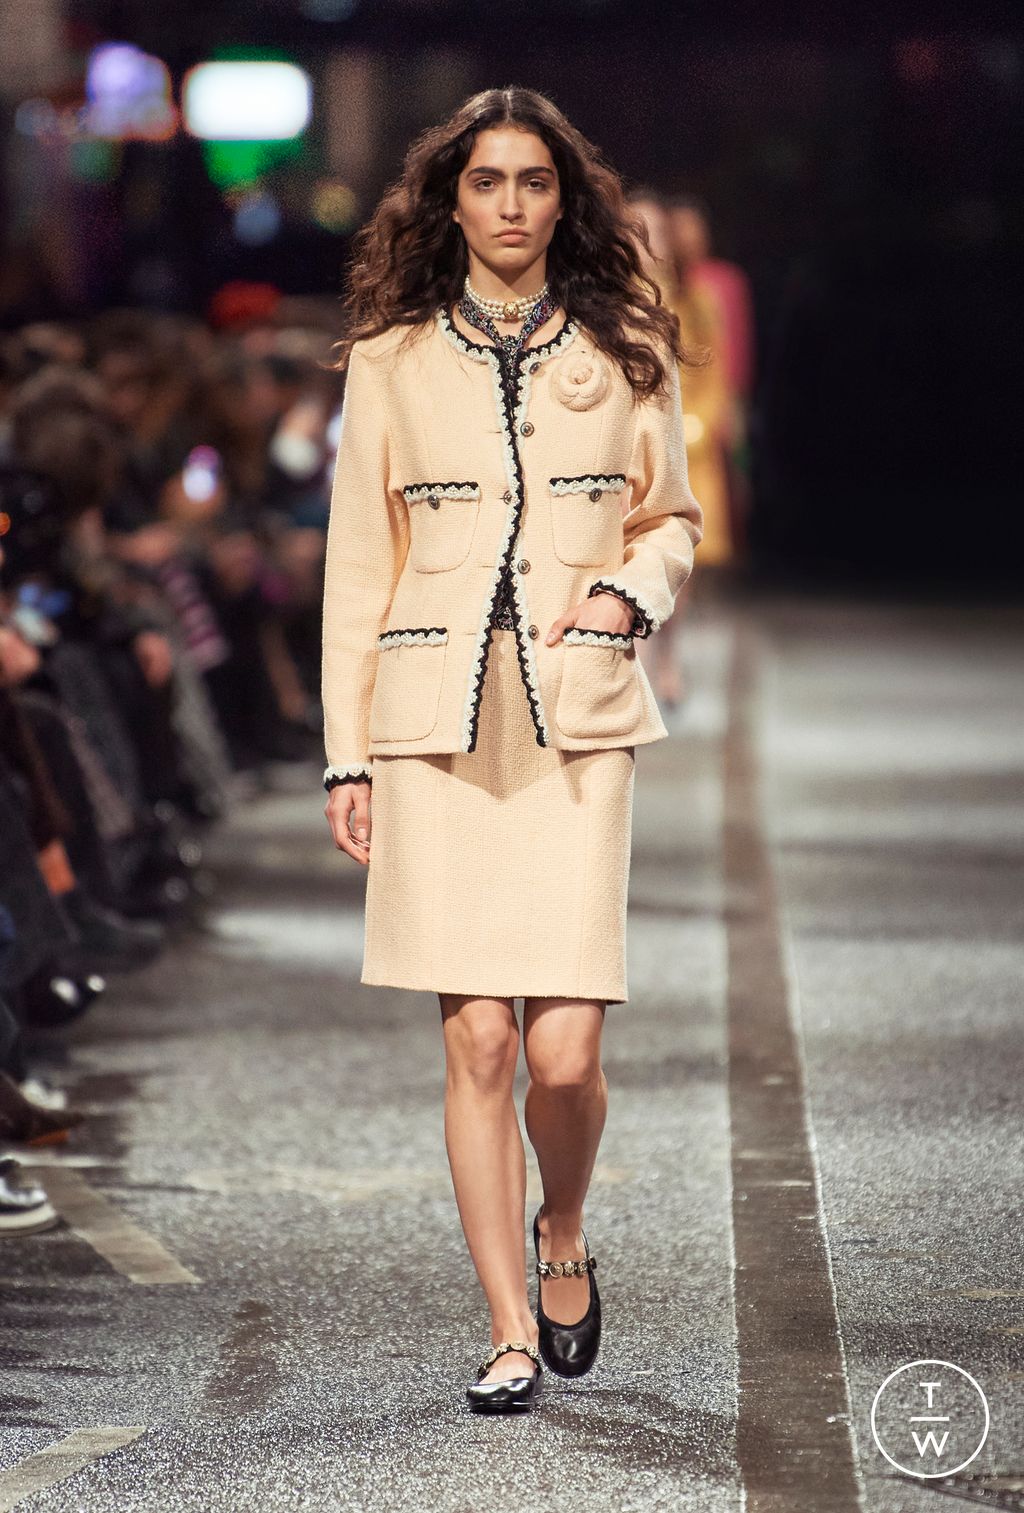 Chanel PF24 womenswear #10 - Tagwalk: The Fashion Search Engine